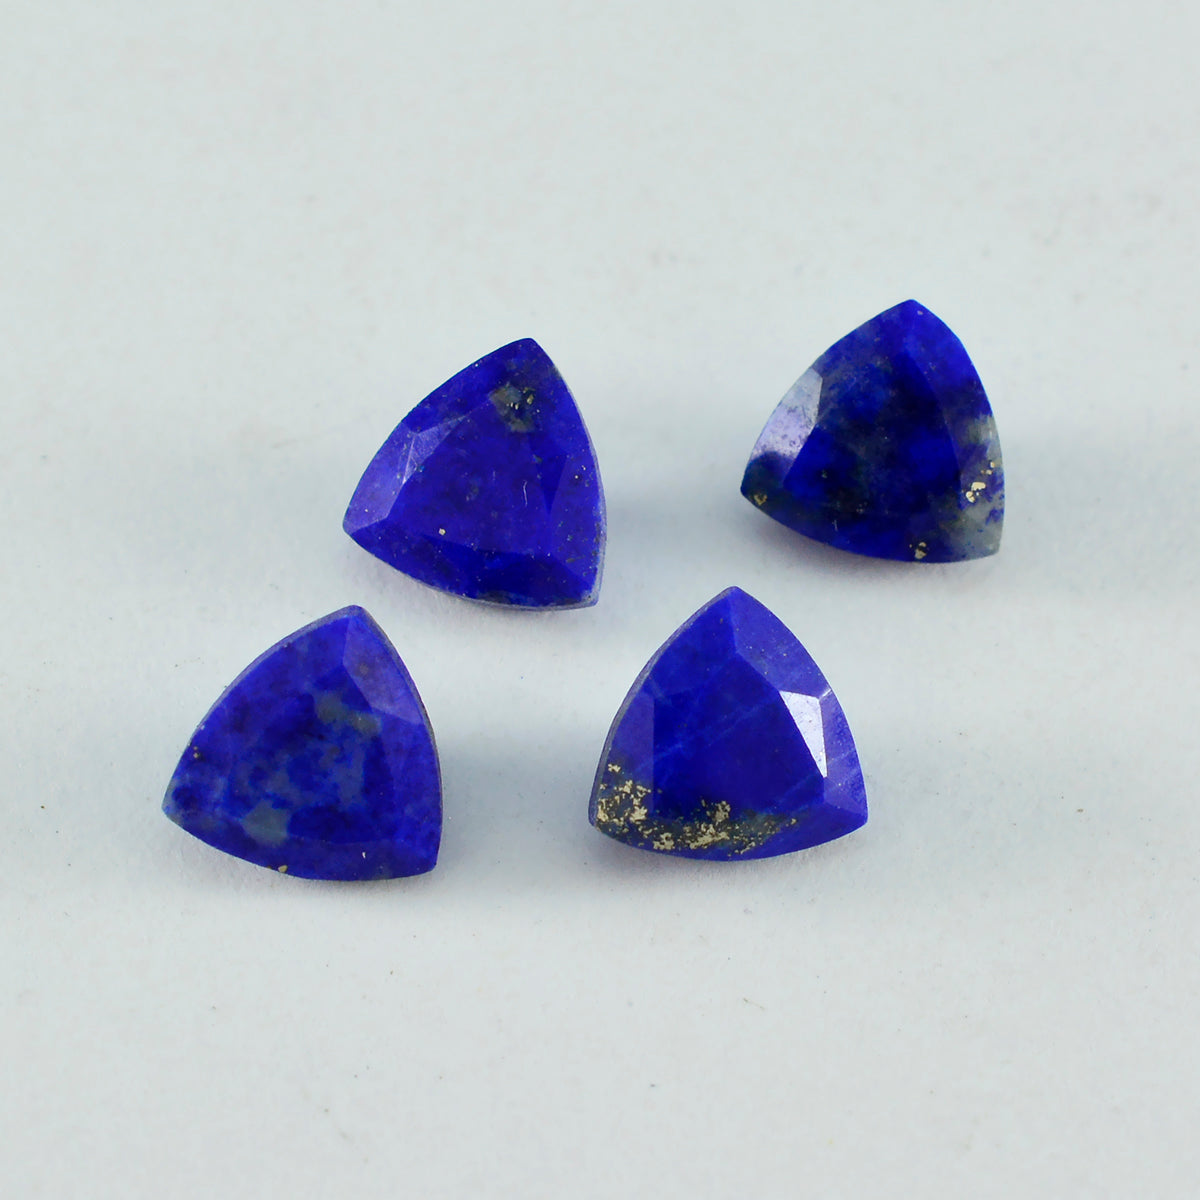 riyogems 1 шт. натуральный синий лазурит ограненный 11x11 мм форма триллион качественных драгоценных камней